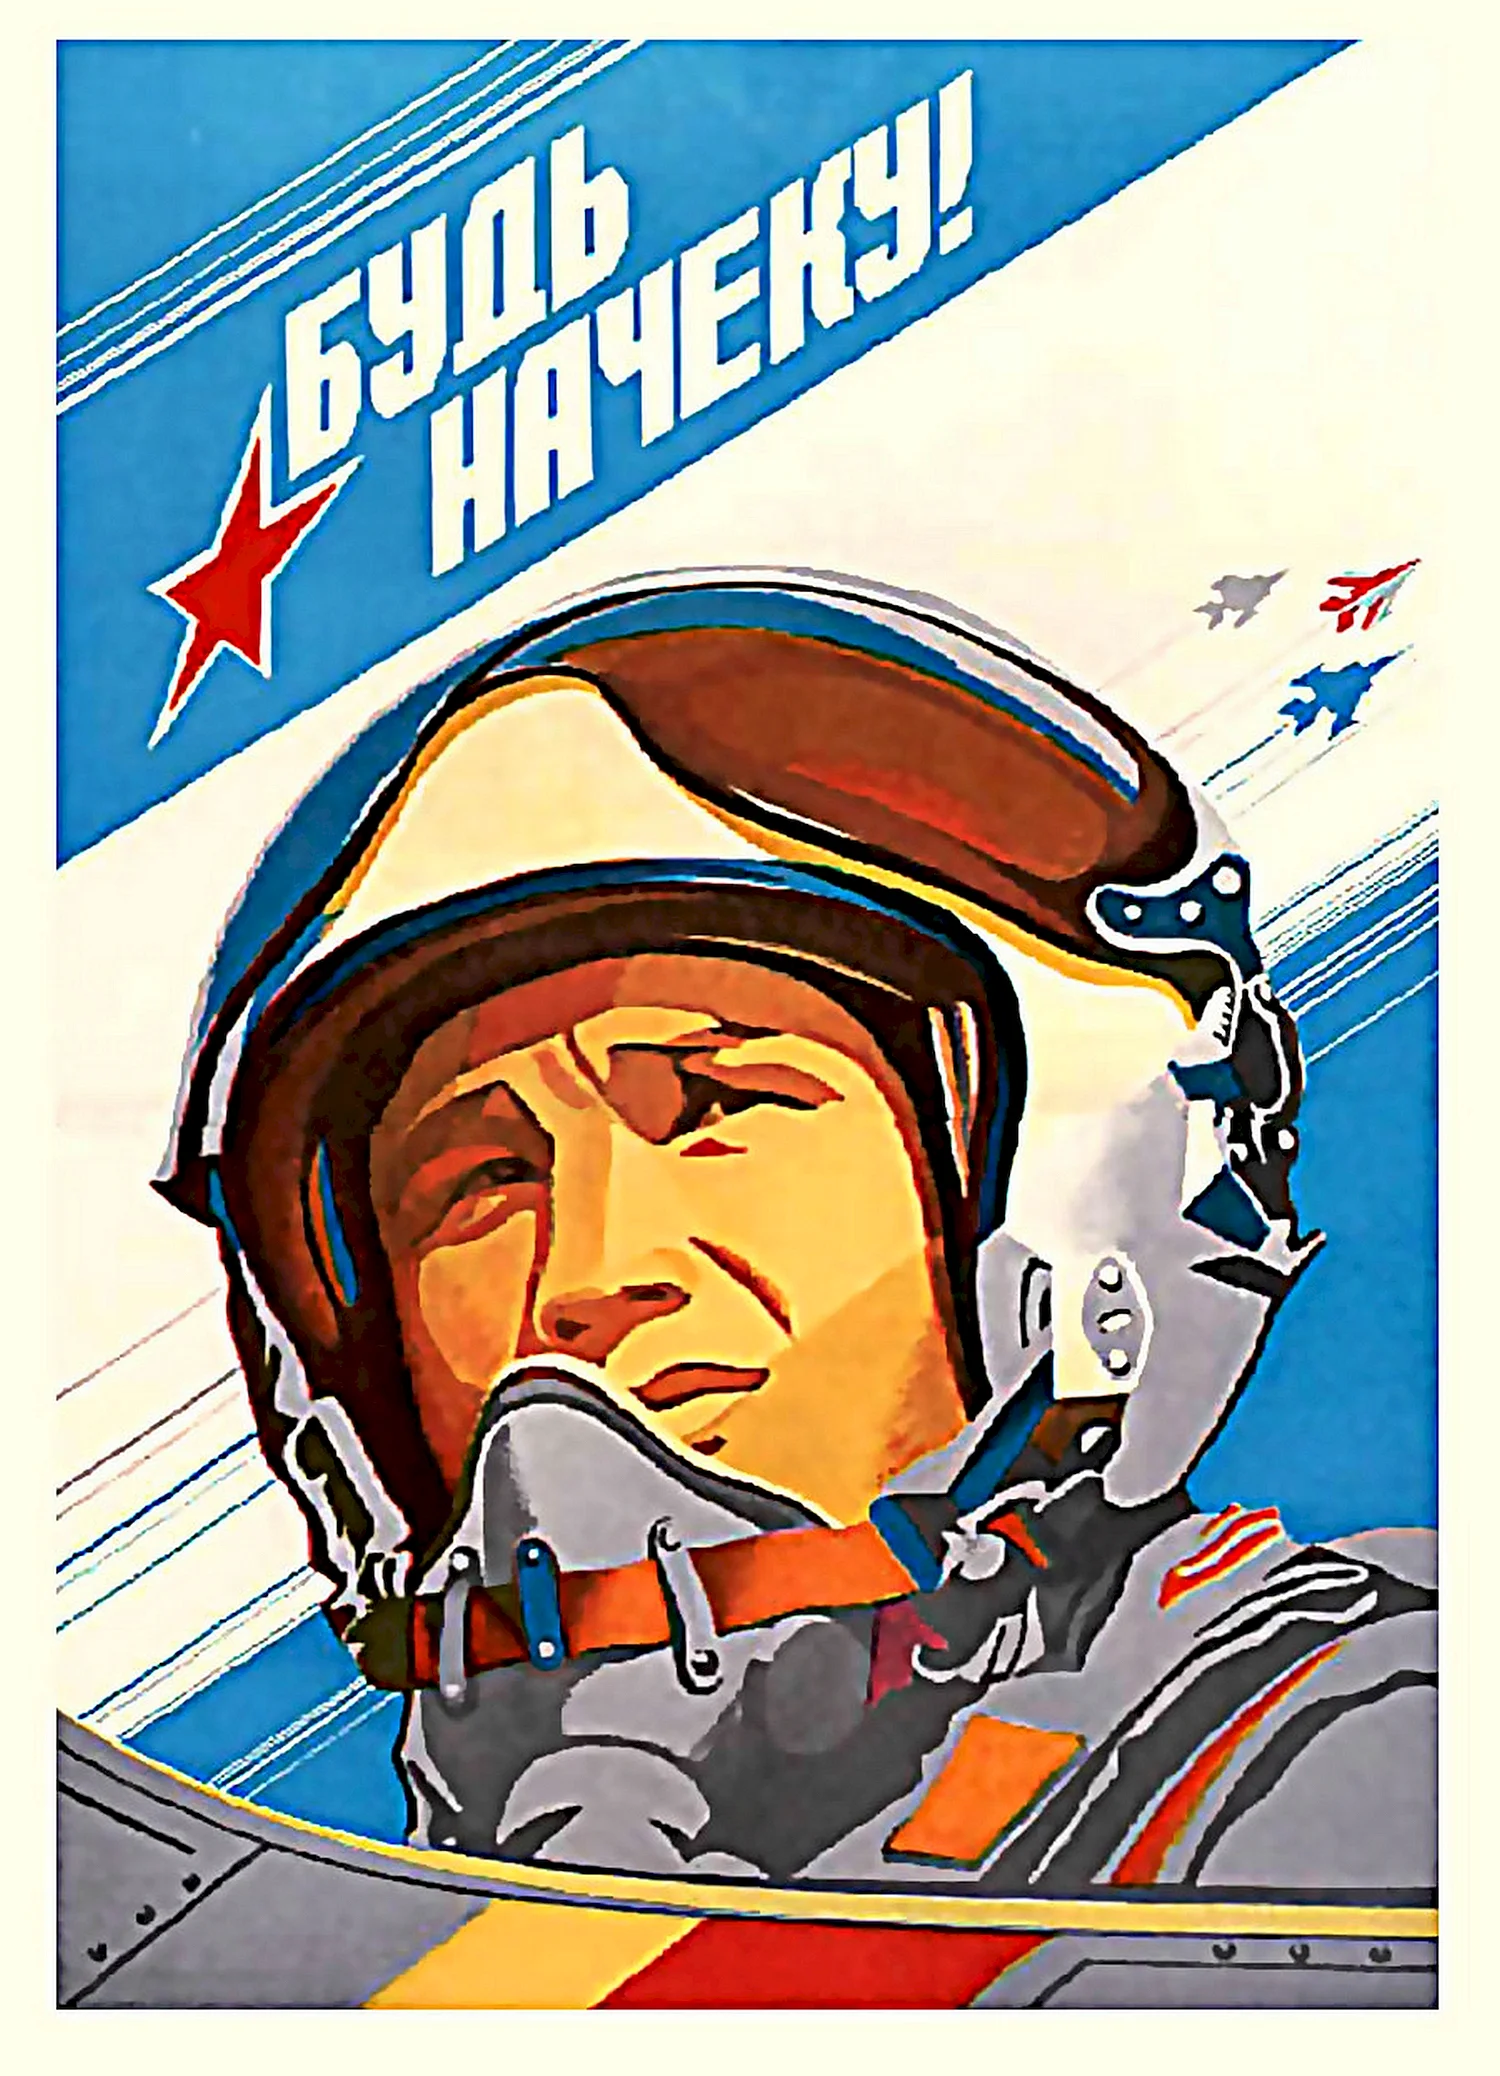 Советские патриотические плакаты